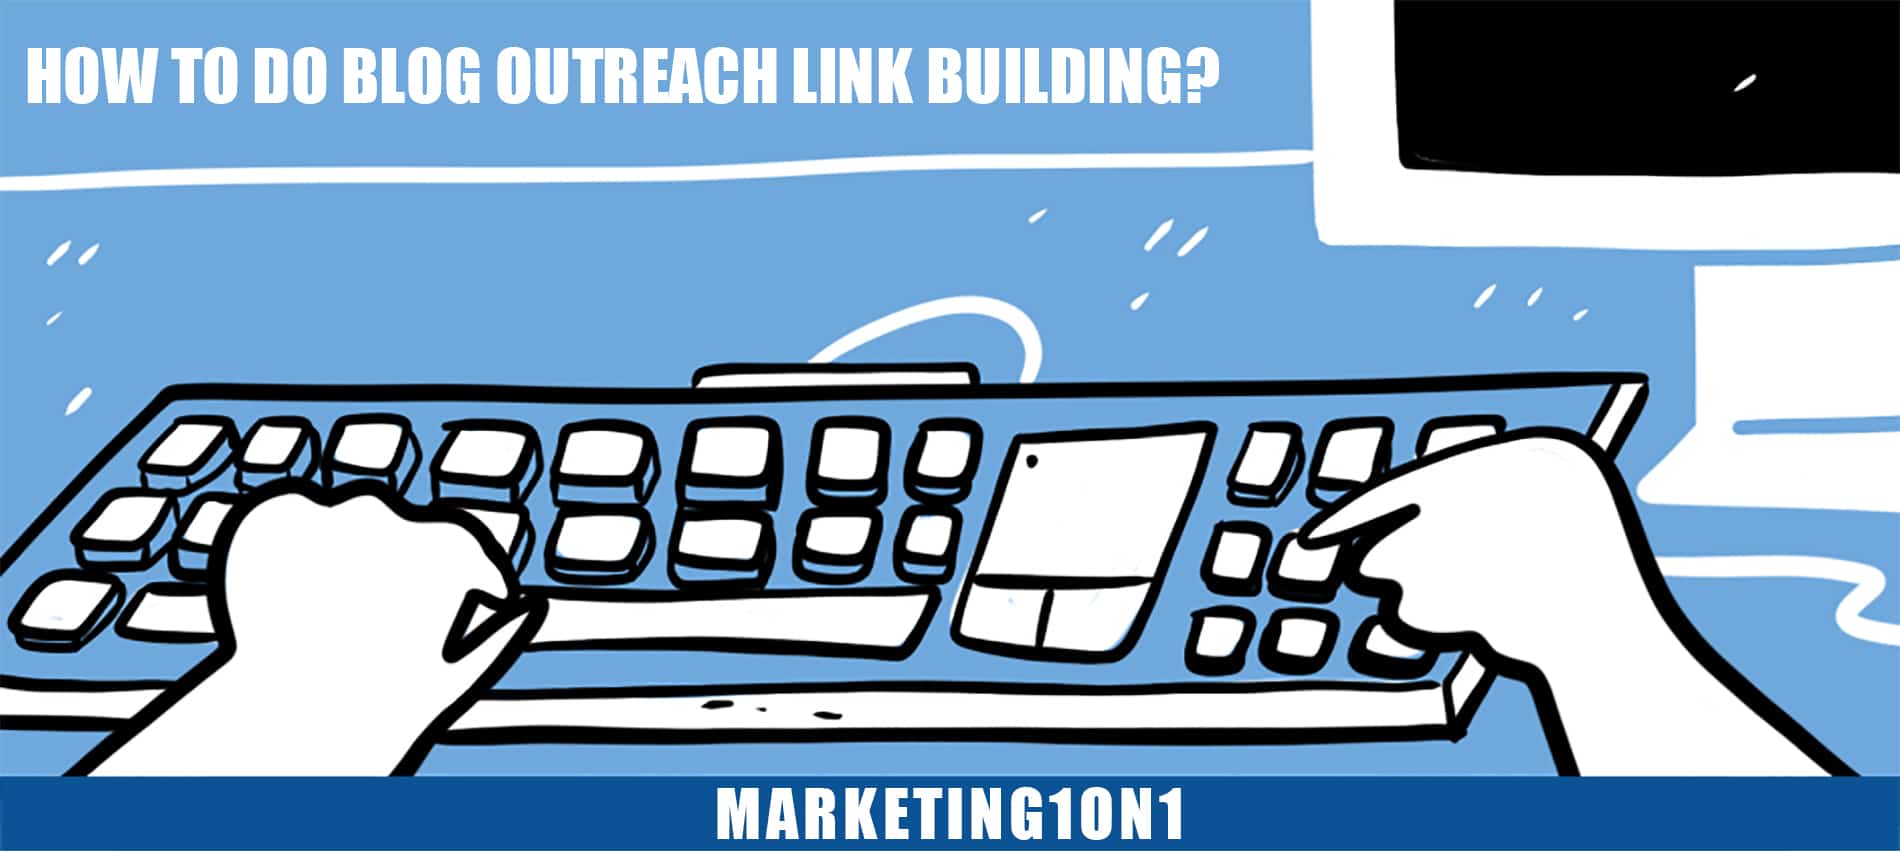 How to do blog outreach link building?